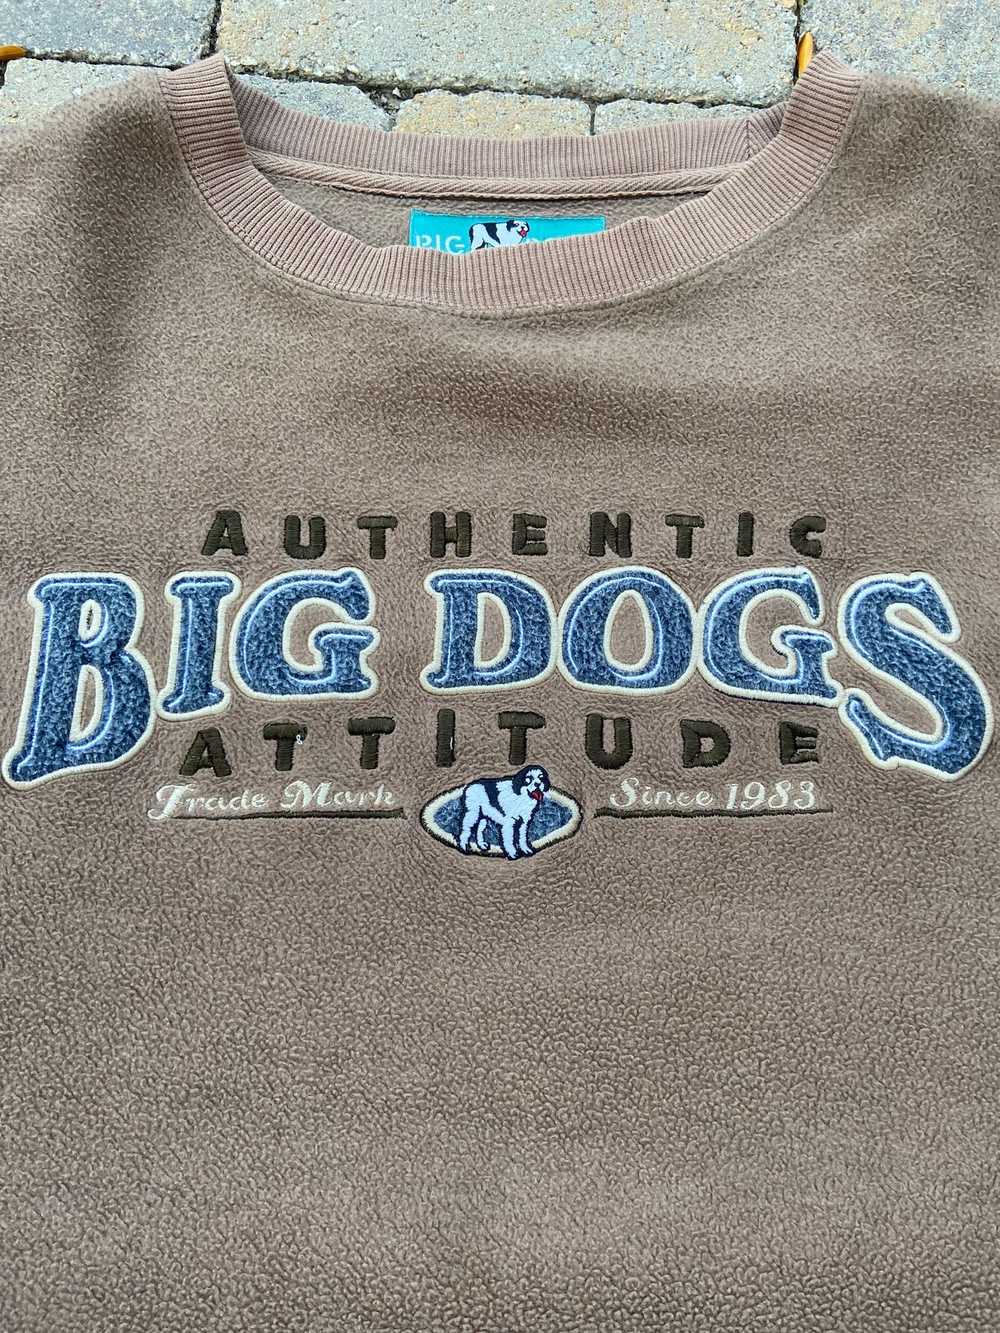 Big Dogs Inside-Out Fleece Big Dogs Crewneck Swea… - image 2